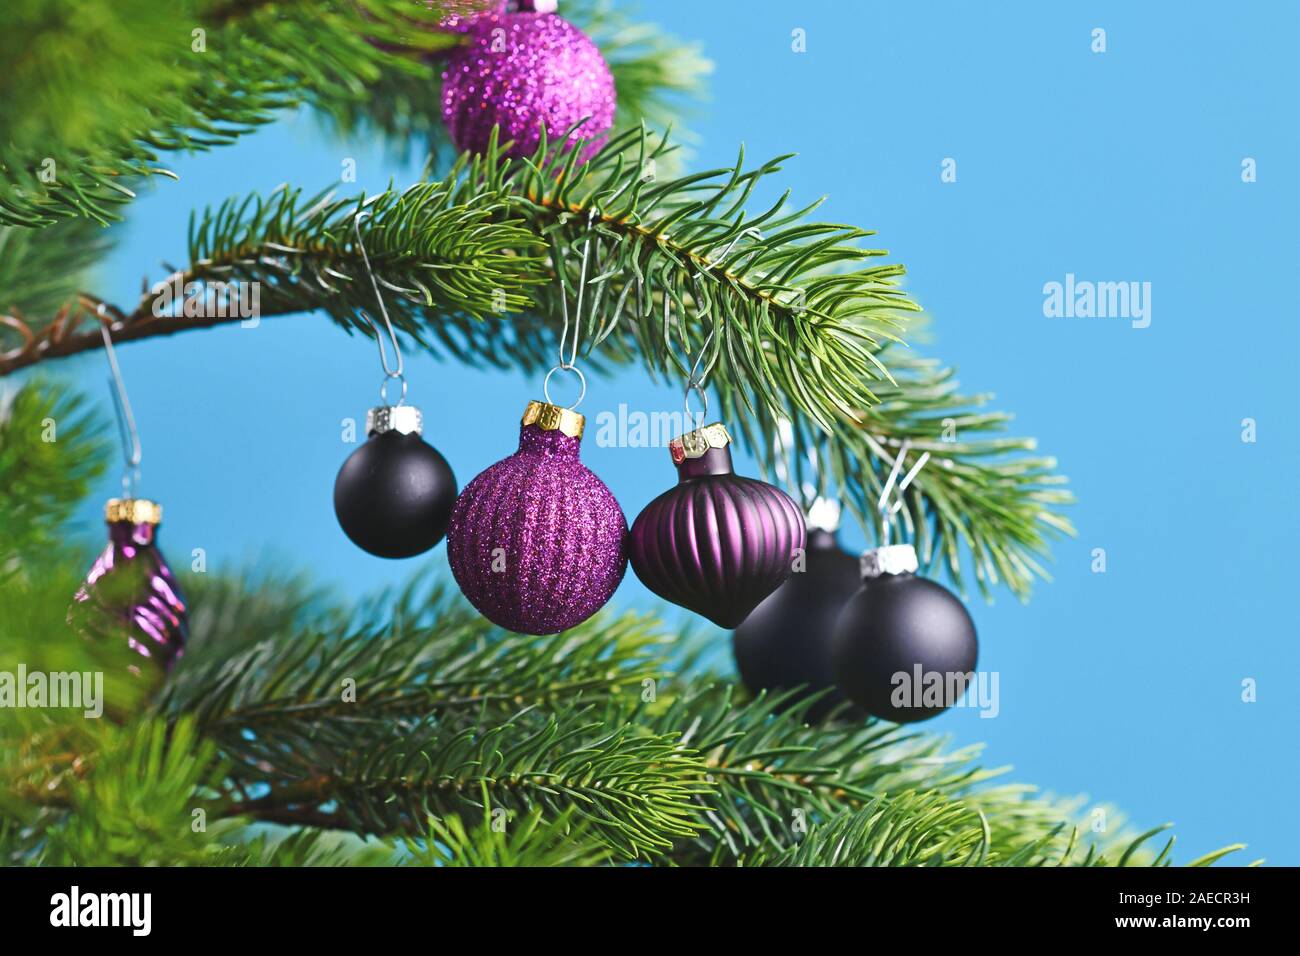 In der Nähe von schönen lila Glas baum Christbaumkugel mit geschmückten Weihnachtsbaum mit anderen saisonalen Baumschmuck auf hellen Hintergrund bue Stockfoto